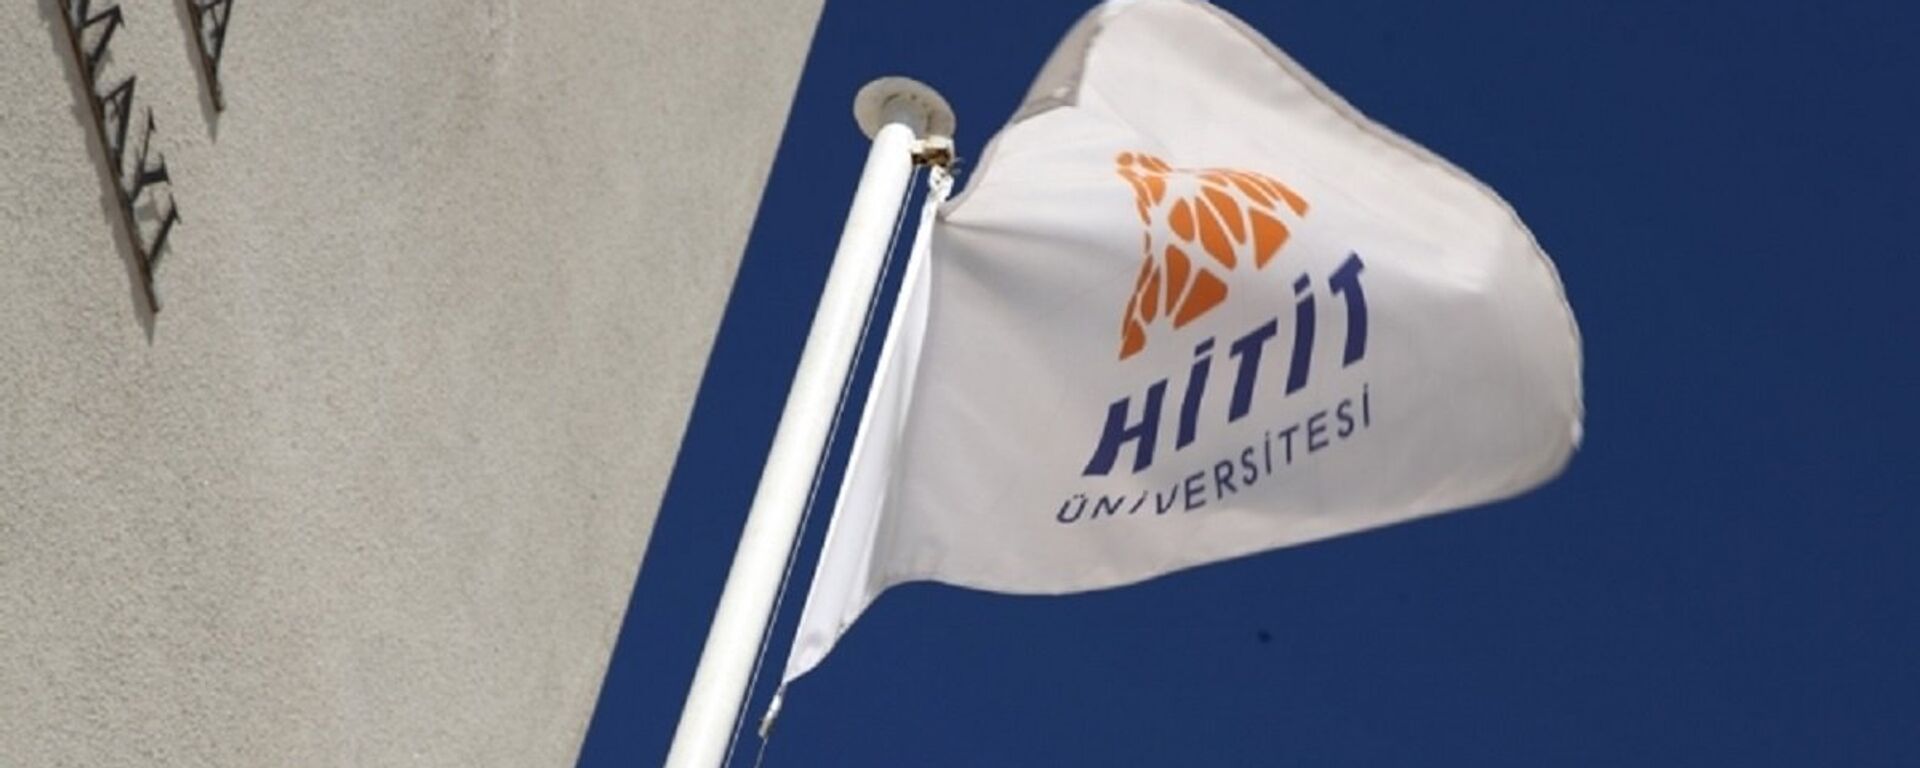 Hitit Üniversitesi - Sputnik Türkiye, 1920, 05.03.2021